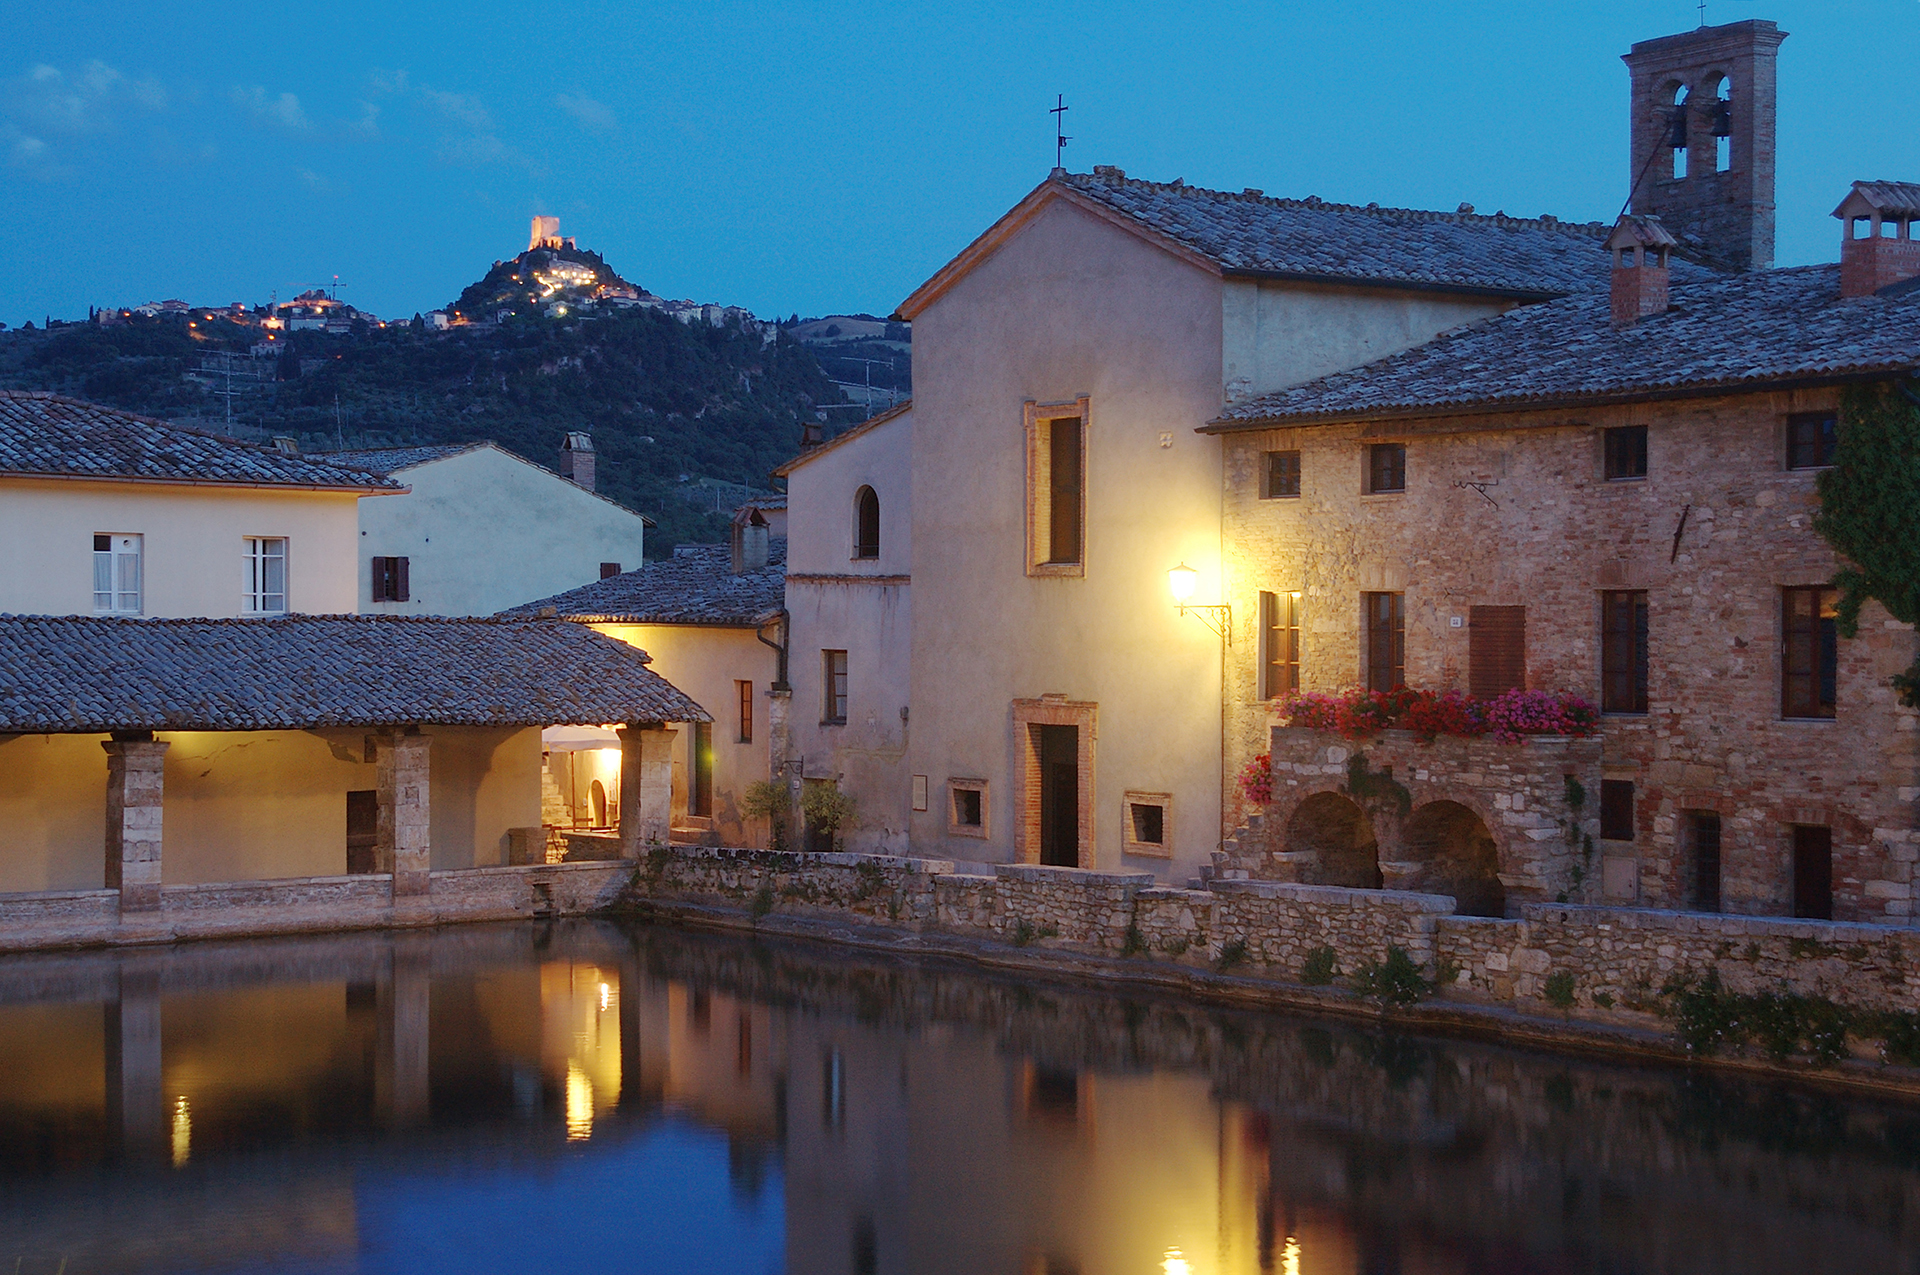 Bagno Vignoni, frazione di San Quirico d'Orcia (SI) - Val d'Orcia -  Patrimonio UNESCO - Toscana